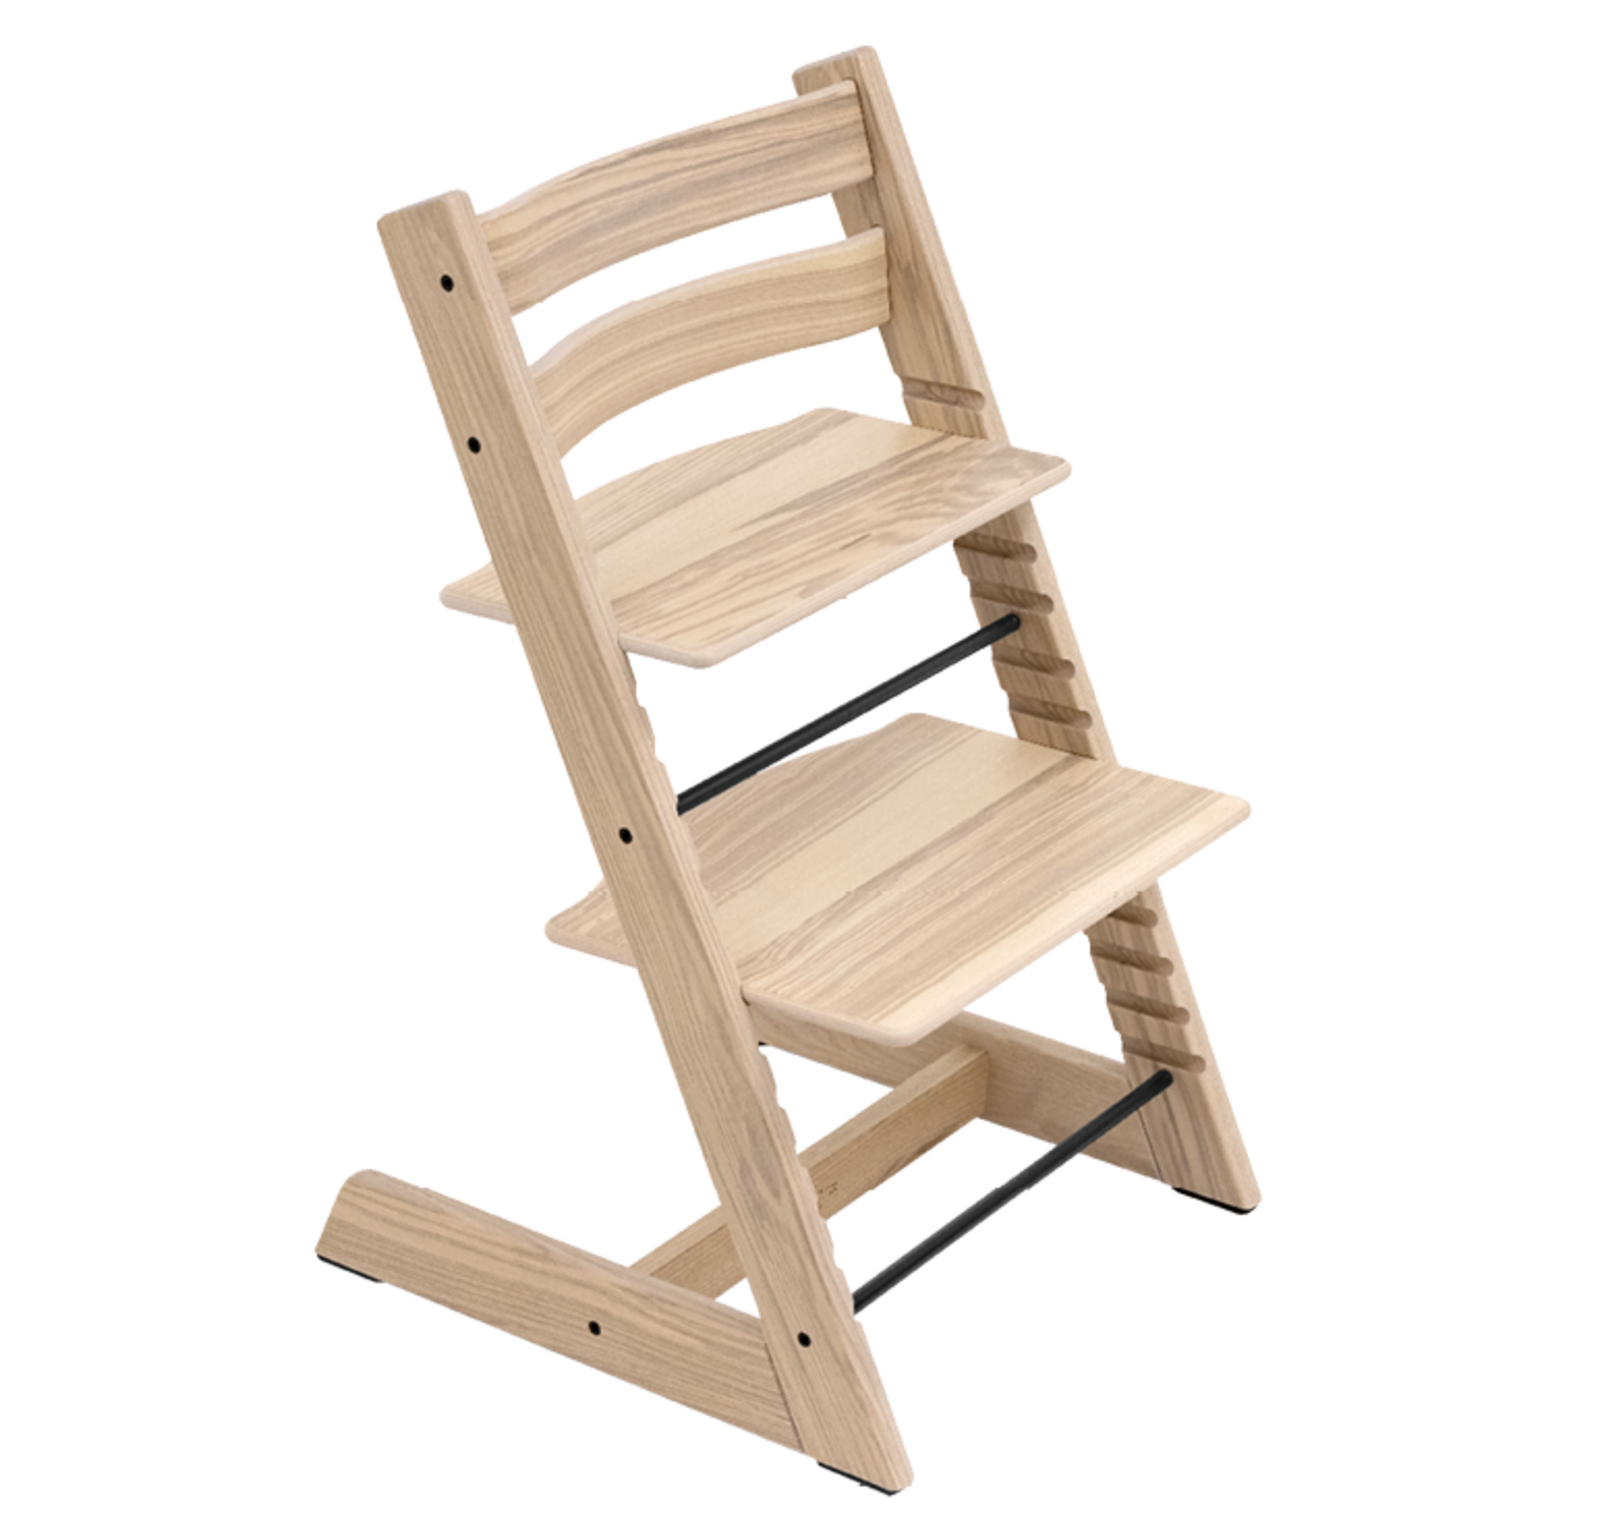 incluir Acostumbrarse a Aleta Trona del diseñador escandinavo Peter Opsvik. Una silla cómoda y ergonómica  de madera de haya que crece junto a tu niño desde el nacimiento.